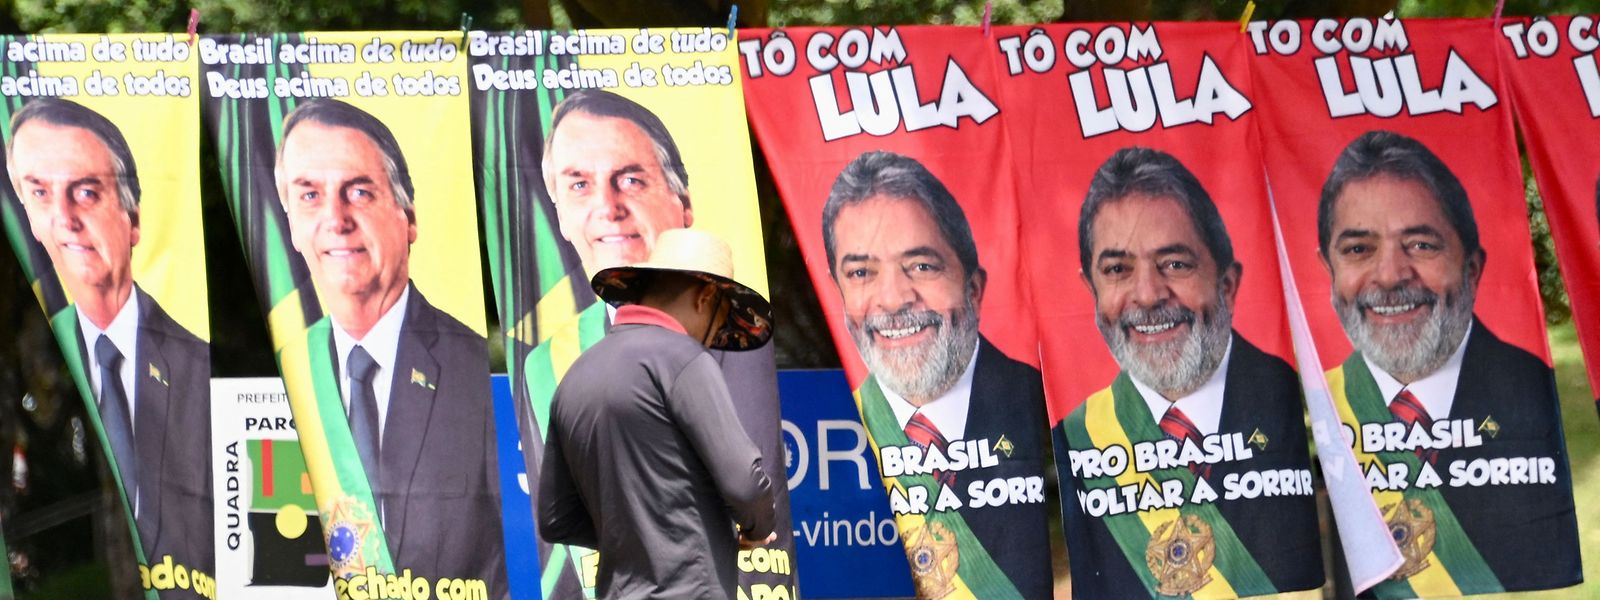 Dans les derniers sondages, l'ancien président Lula, du Parti des travailleurs (PT, gauche), a encore augmenté son avance. Il obtiendrait 50 % des voix au premier tour, contre 36 % pour Bolsonaro. 